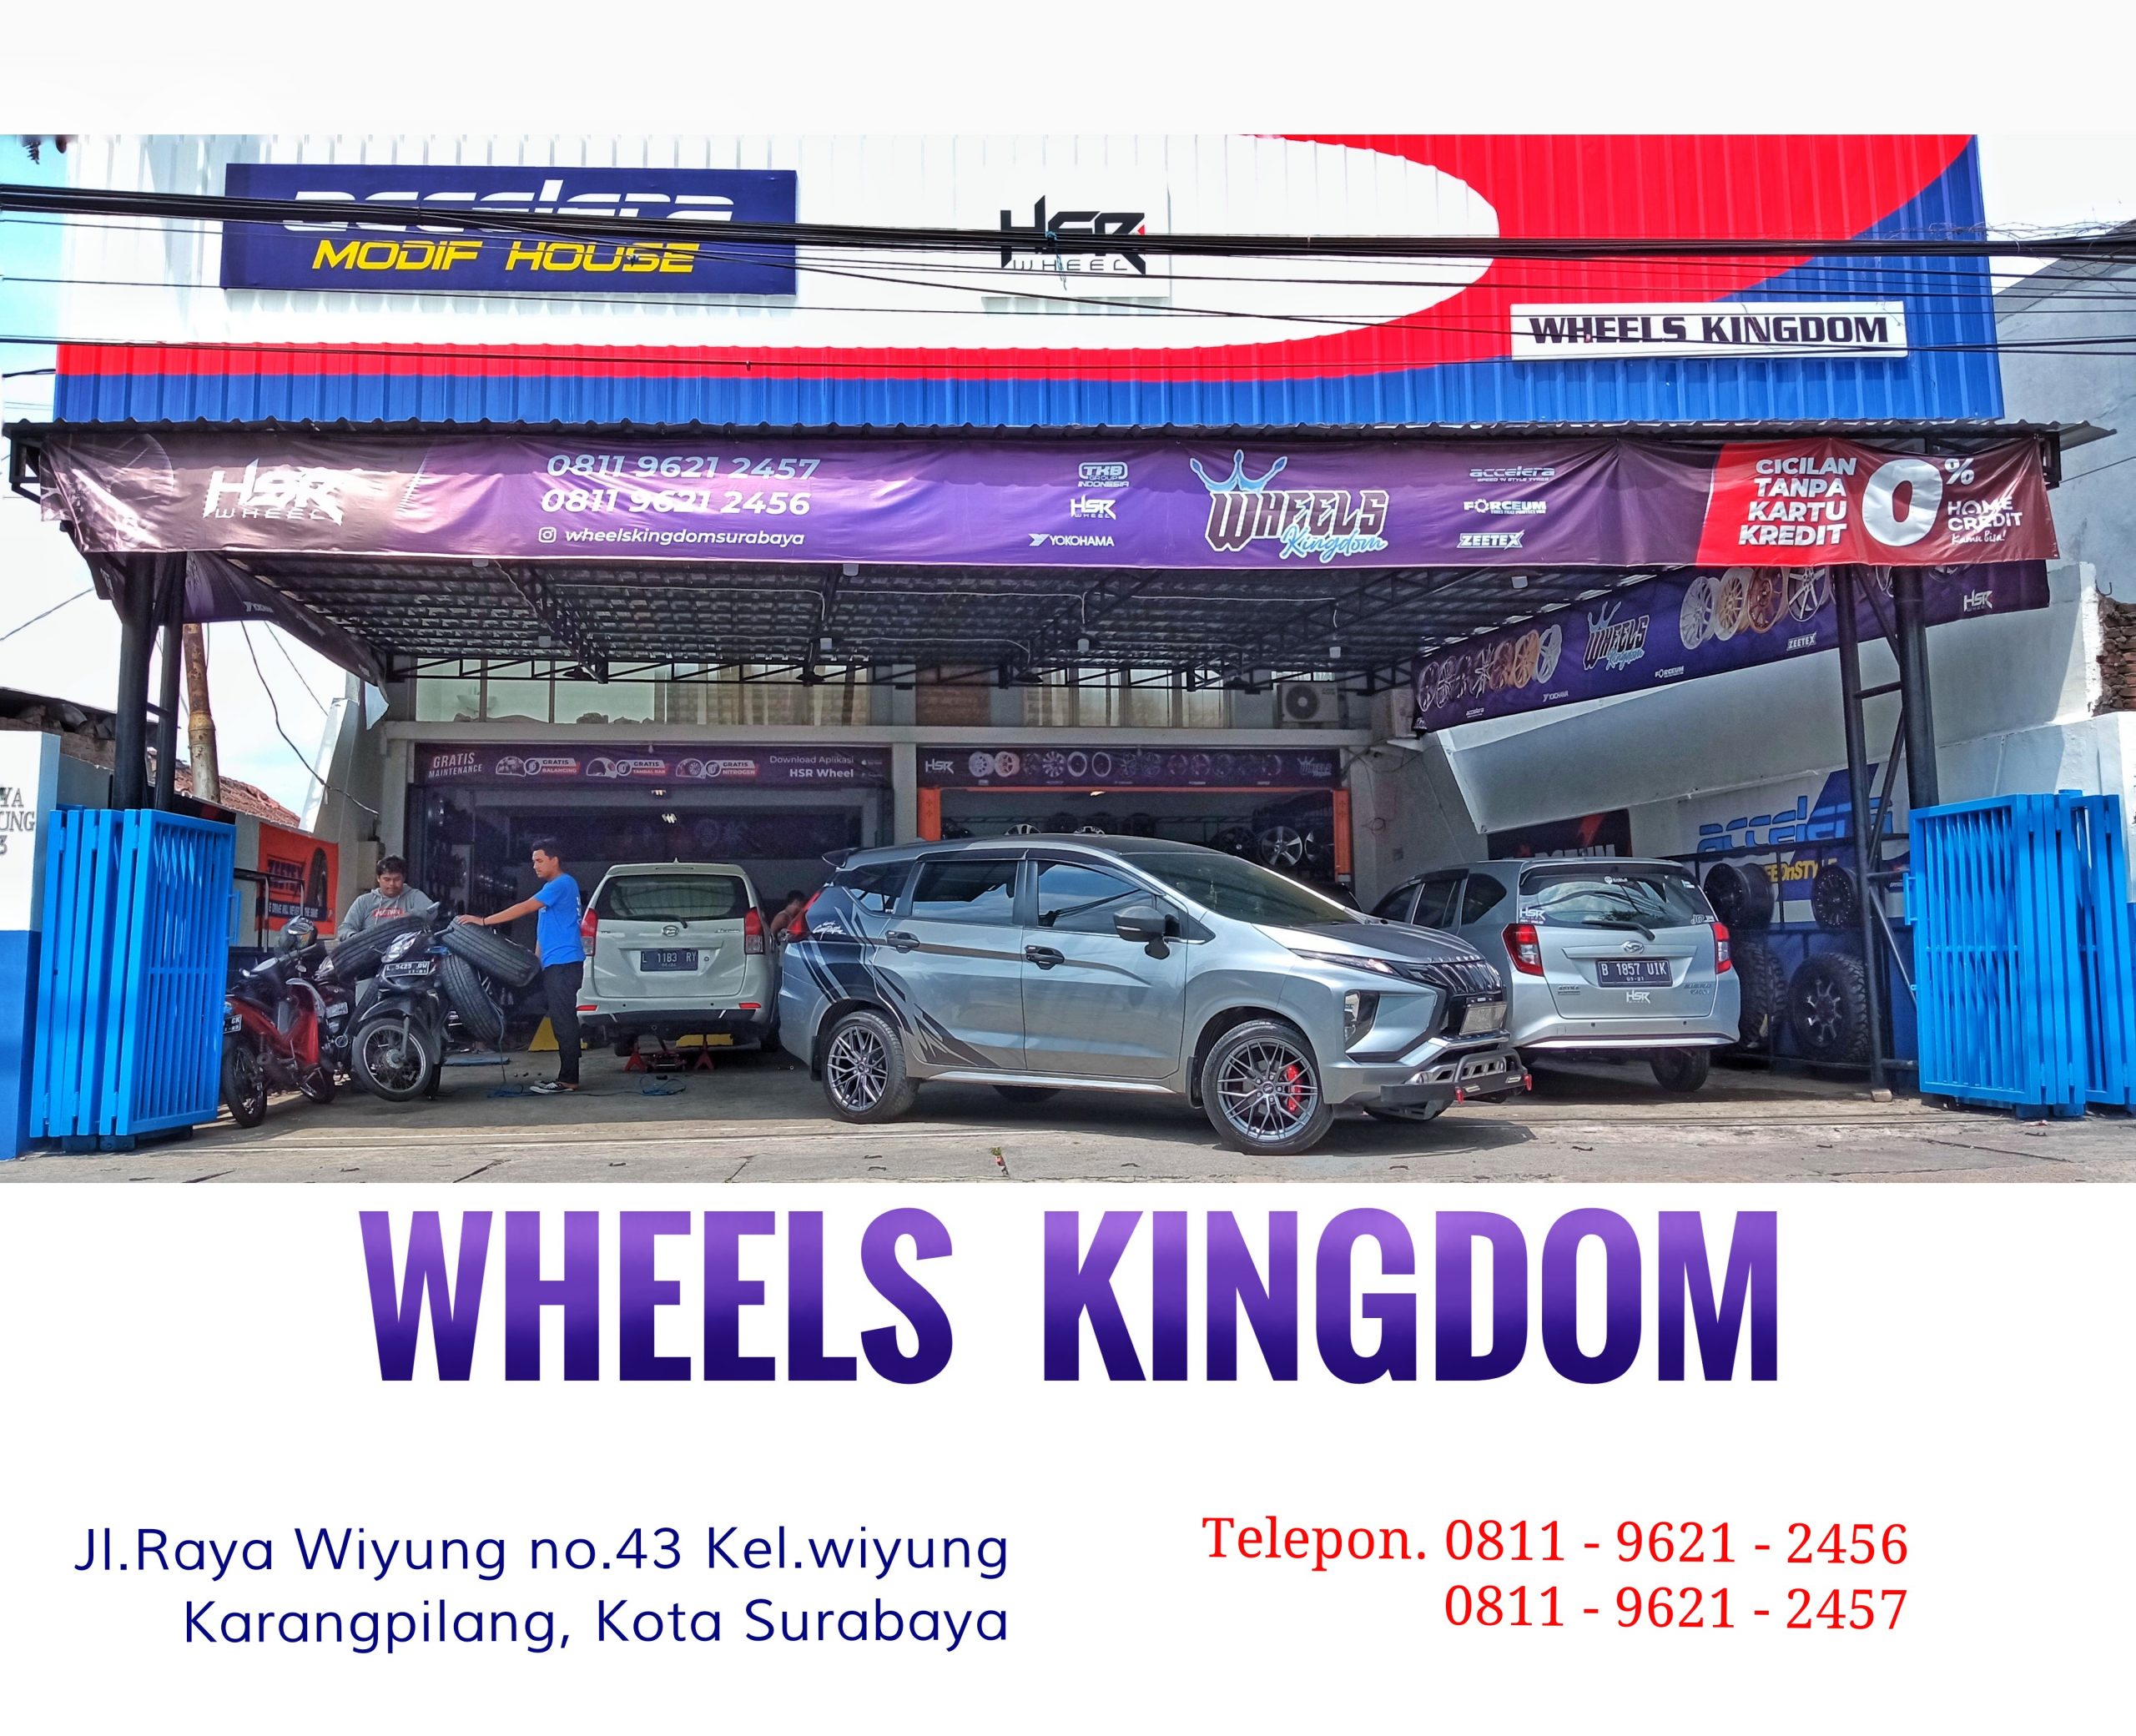 Toko jual beli velg mobil berkualitas di tuban jawa timur | Wheels kingdom